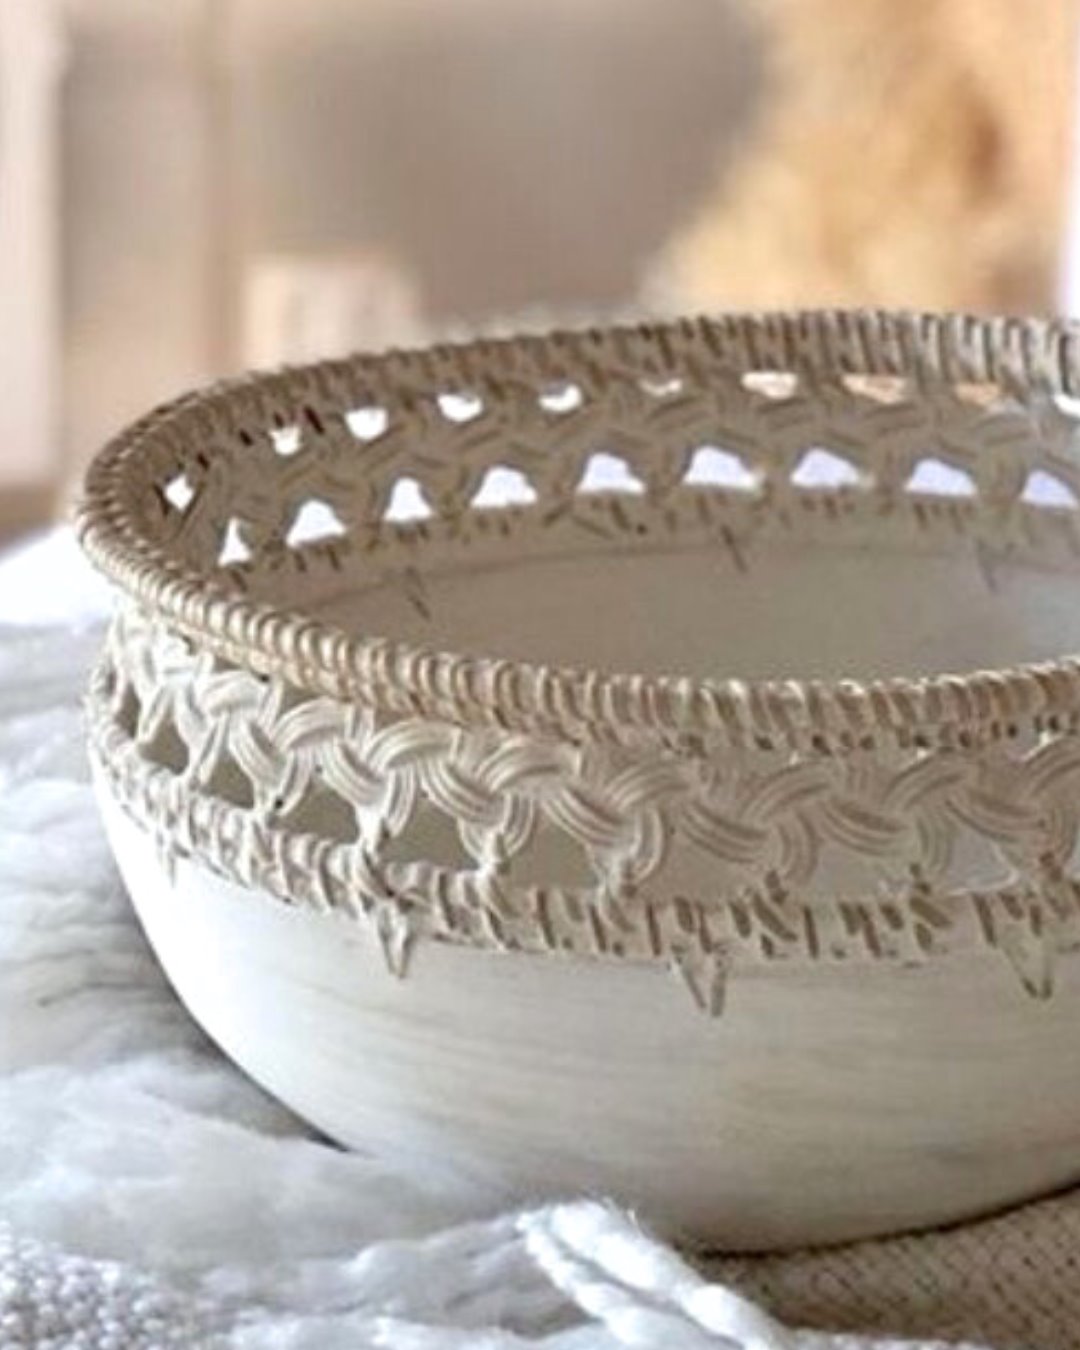 Sia White Washed Basket Weaved Style Bowls - 3 Sizes Sun Republic 